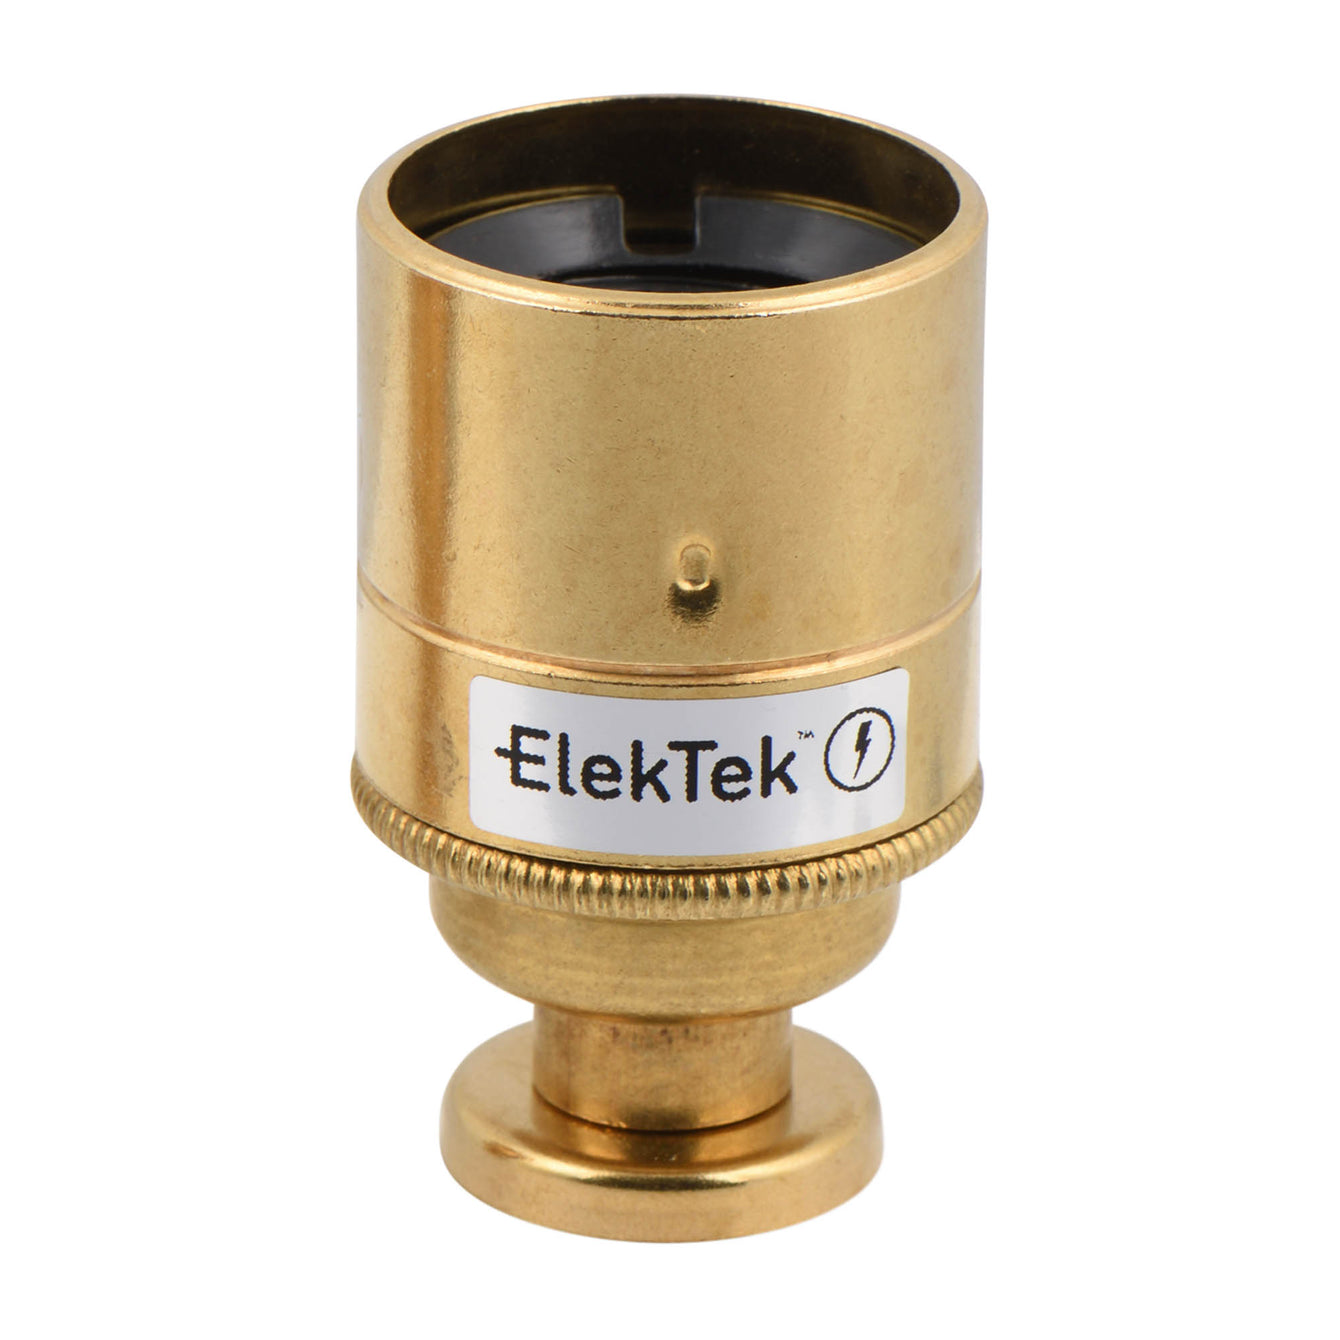 ElekTek ES Edison Screw E27 Lamp Holder Plain Skirt With Back Plate Cover and Screws Brass - Buy It Better Antique Brass